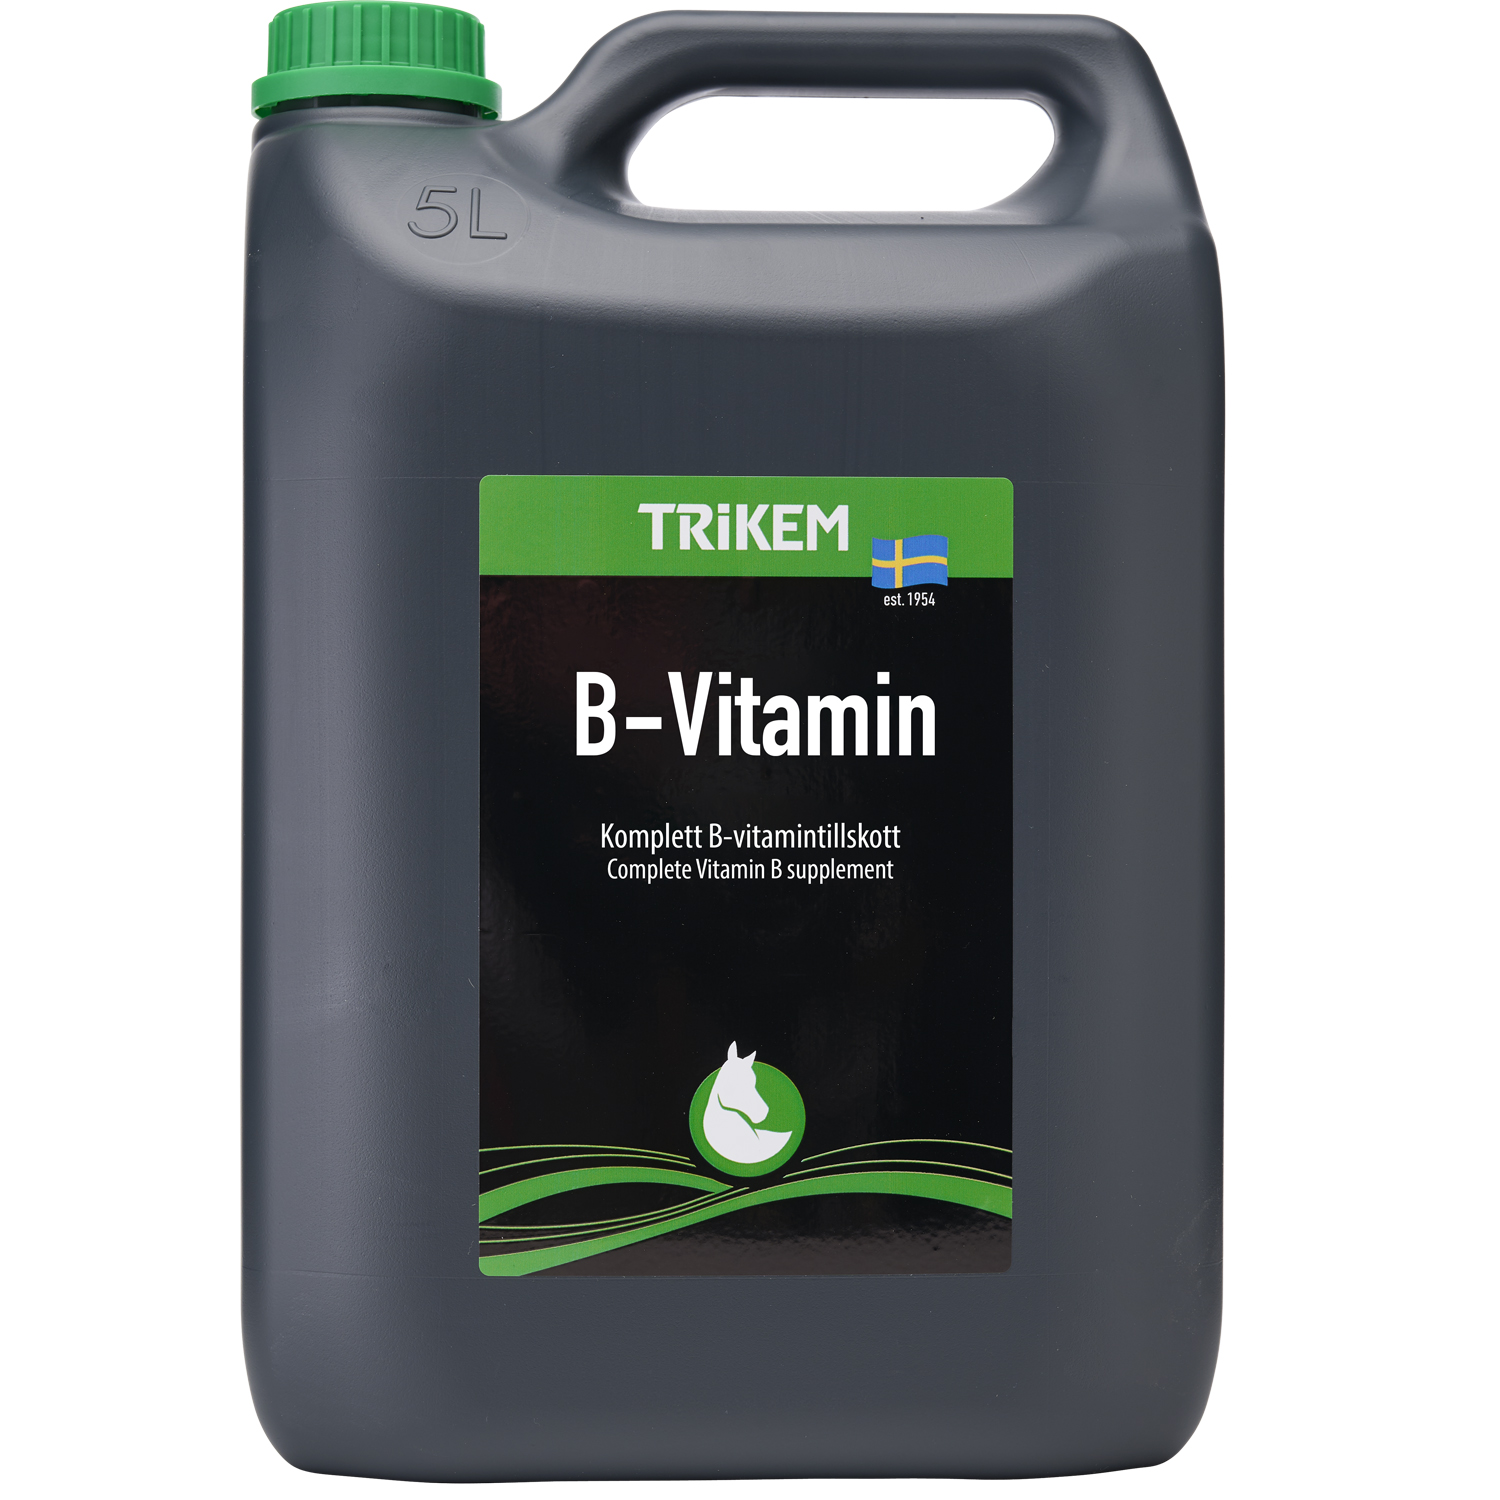 Vimital b-vitamin 5 l